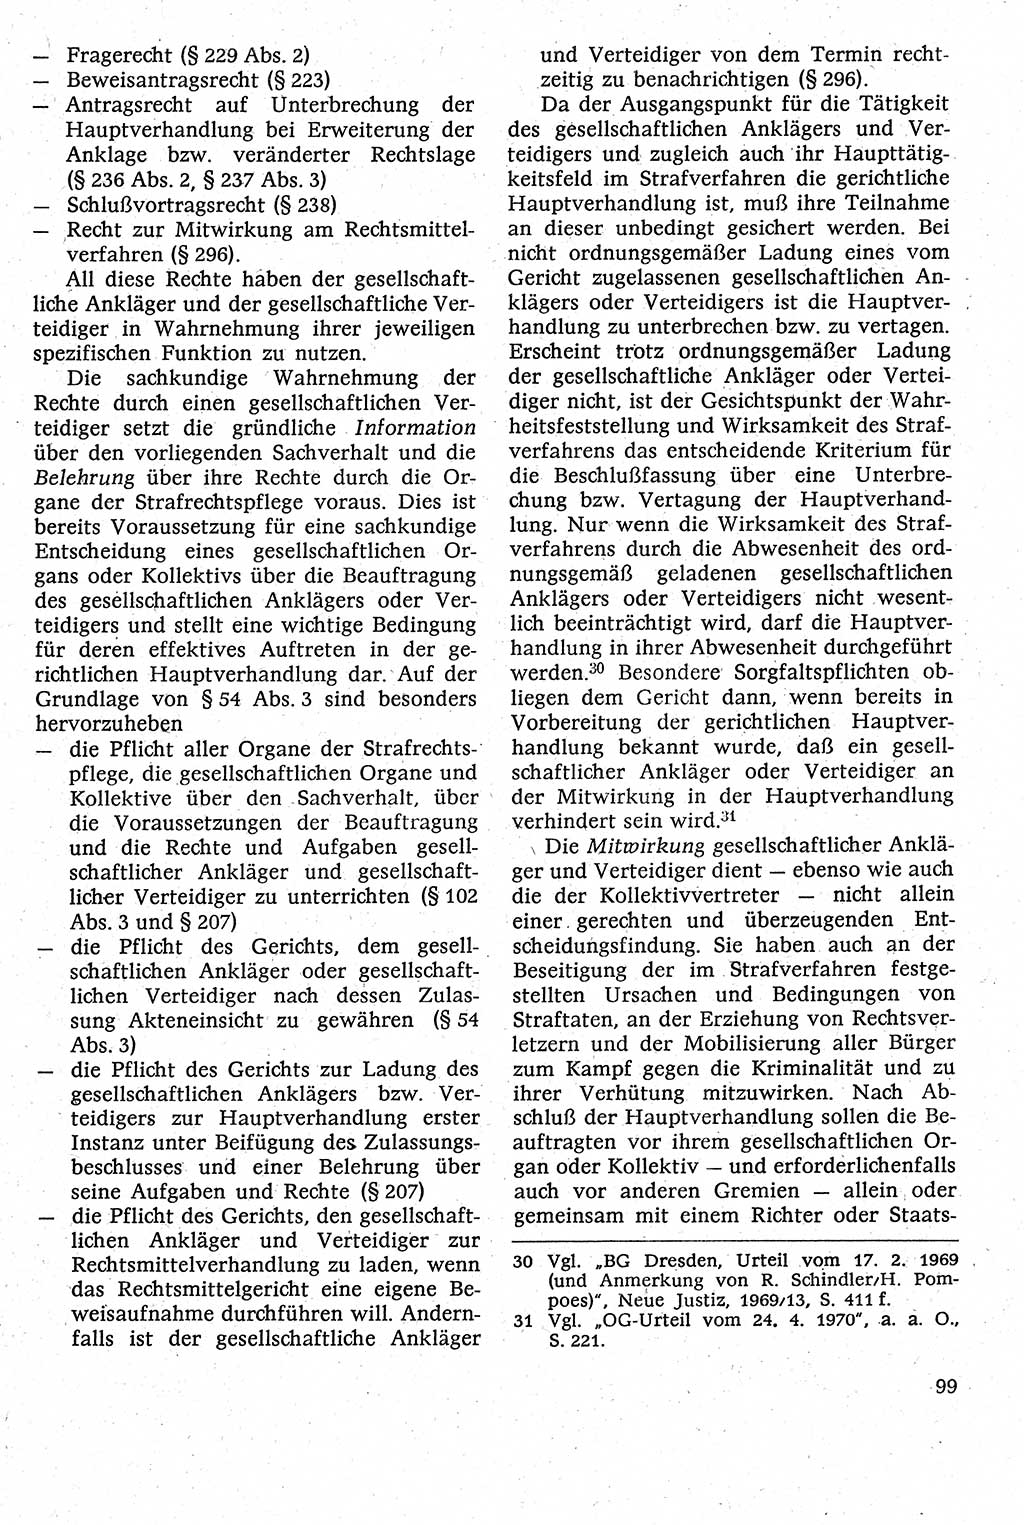 Strafverfahrensrecht [Deutsche Demokratische Republik (DDR)], Lehrbuch 1982, Seite 99 (Strafverf.-R. DDR Lb. 1982, S. 99)